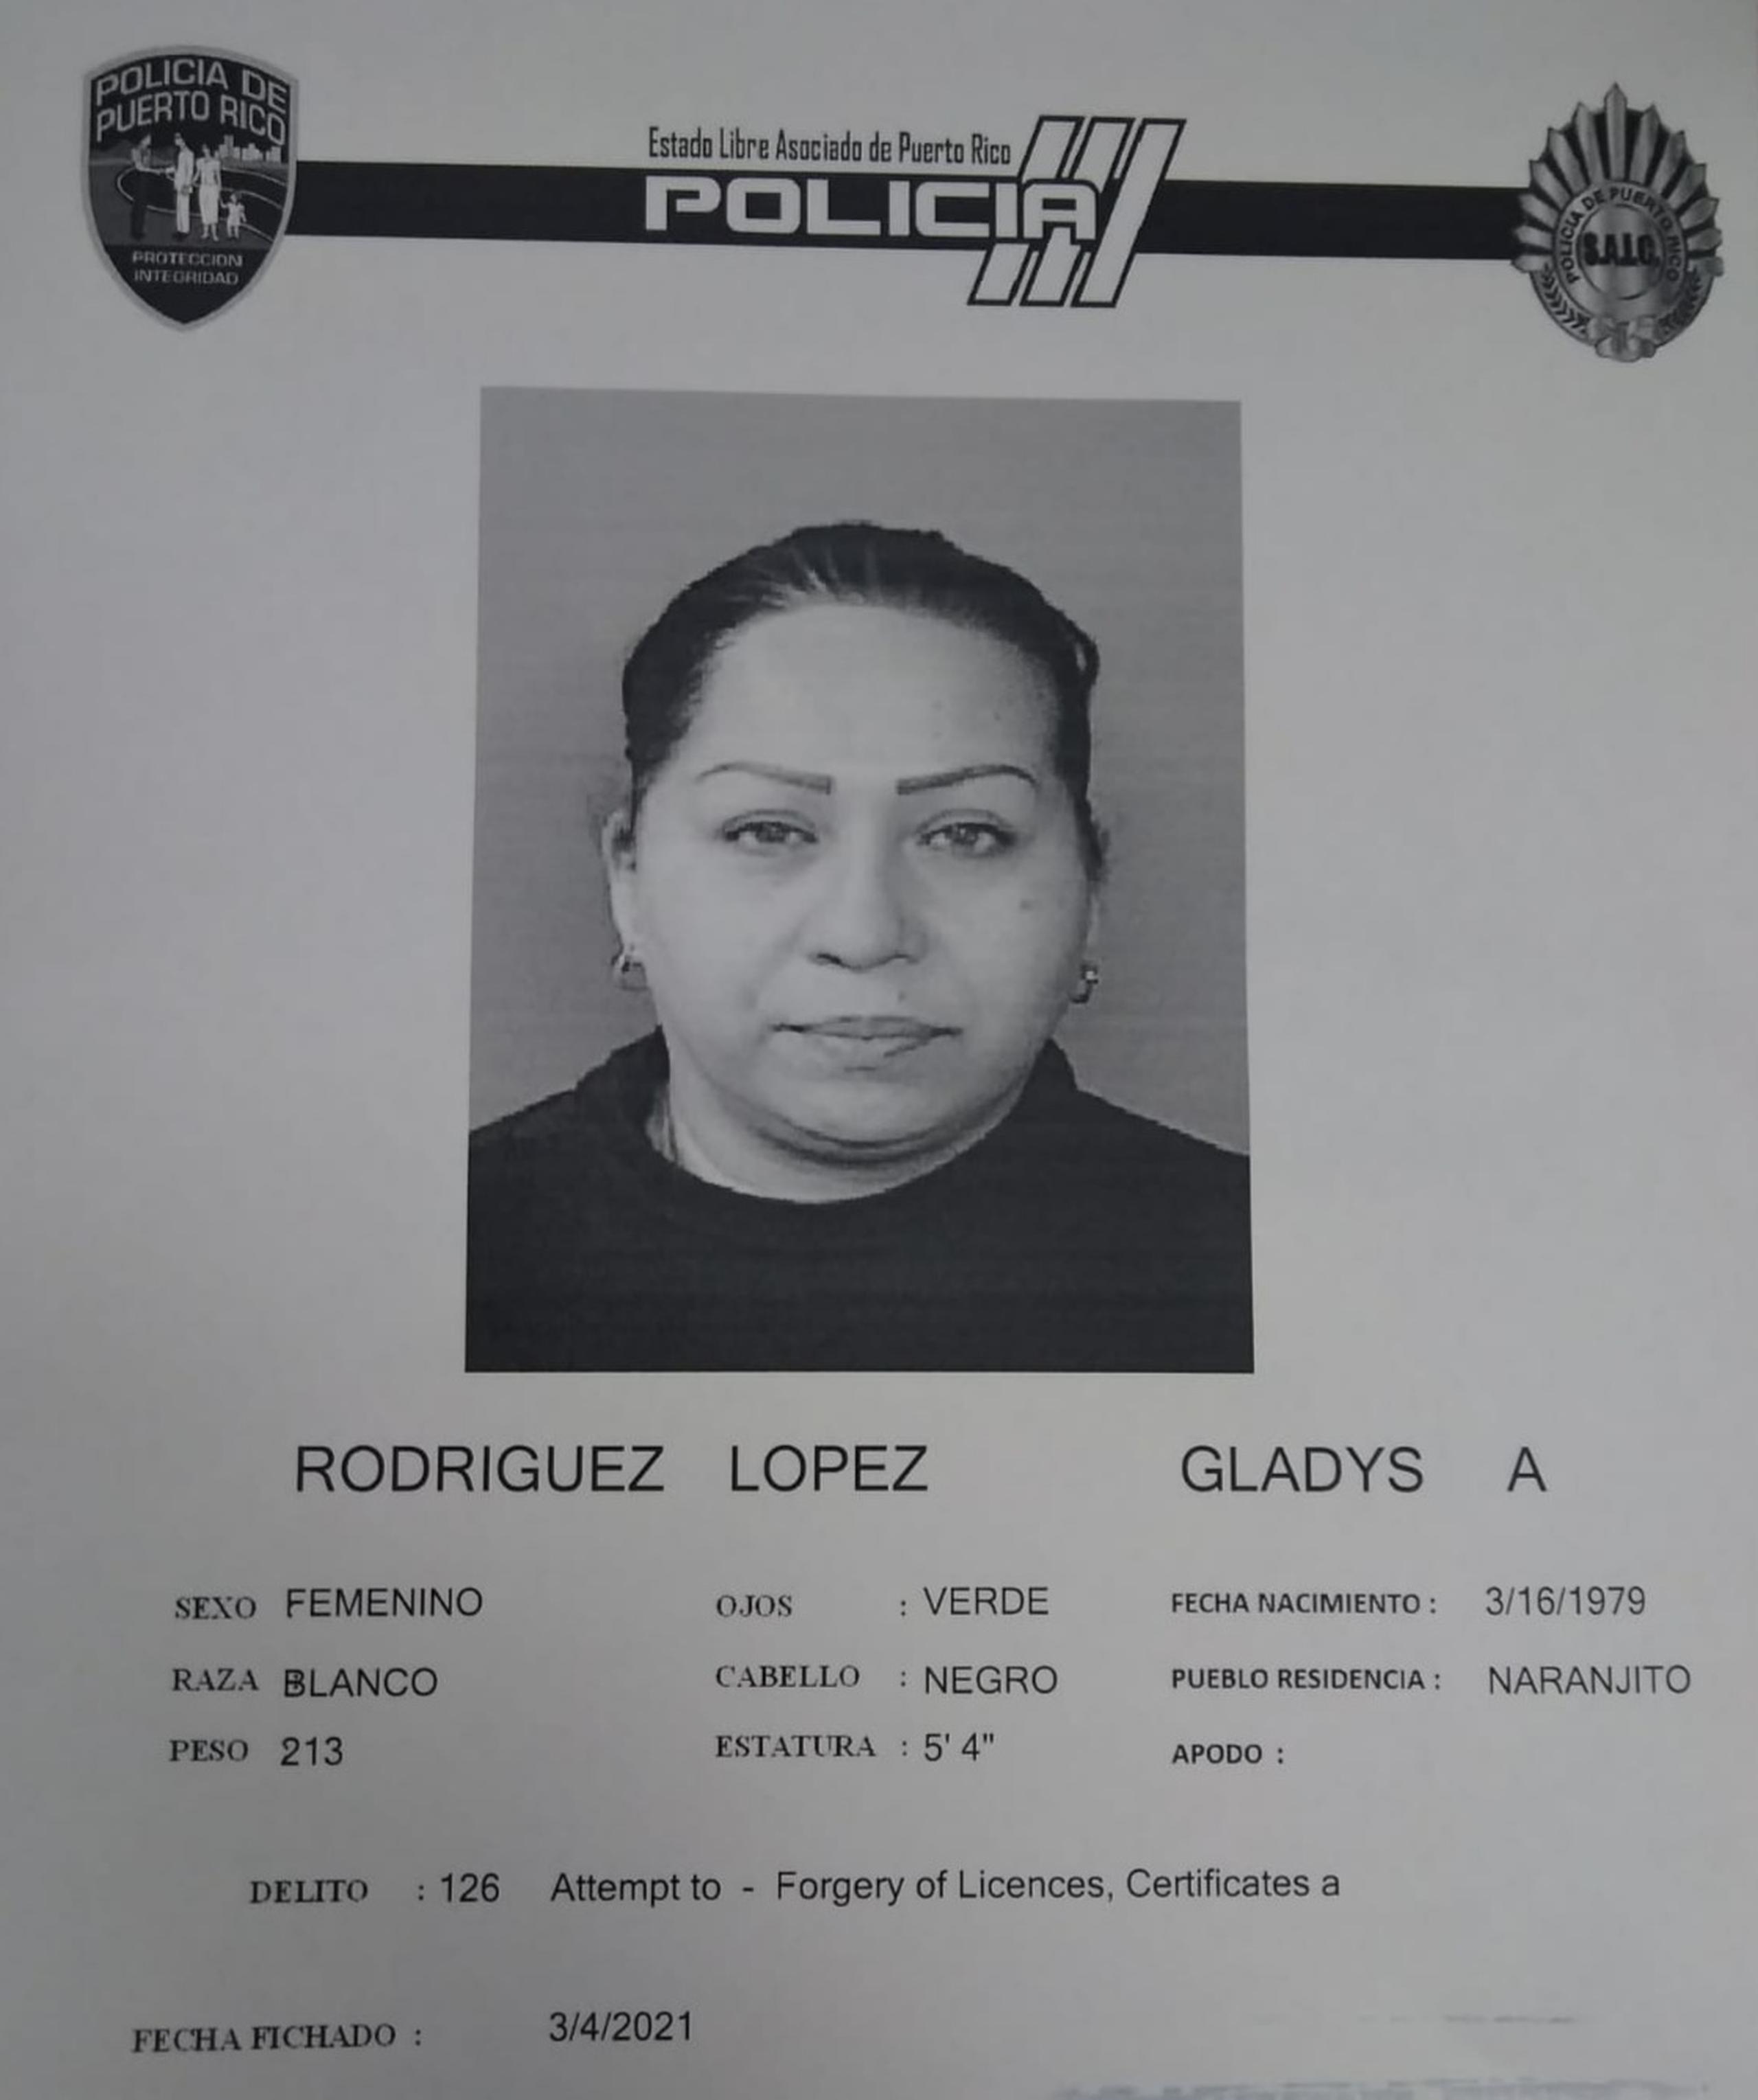 Cargos por falsificación de licencia fueron radicados contra Gladys Adriana López Rodríguez de 41 años, con relación a un esquema de fraude al programa federal de Asistencia por Desempleo Pandémico (PUA, en inglés).